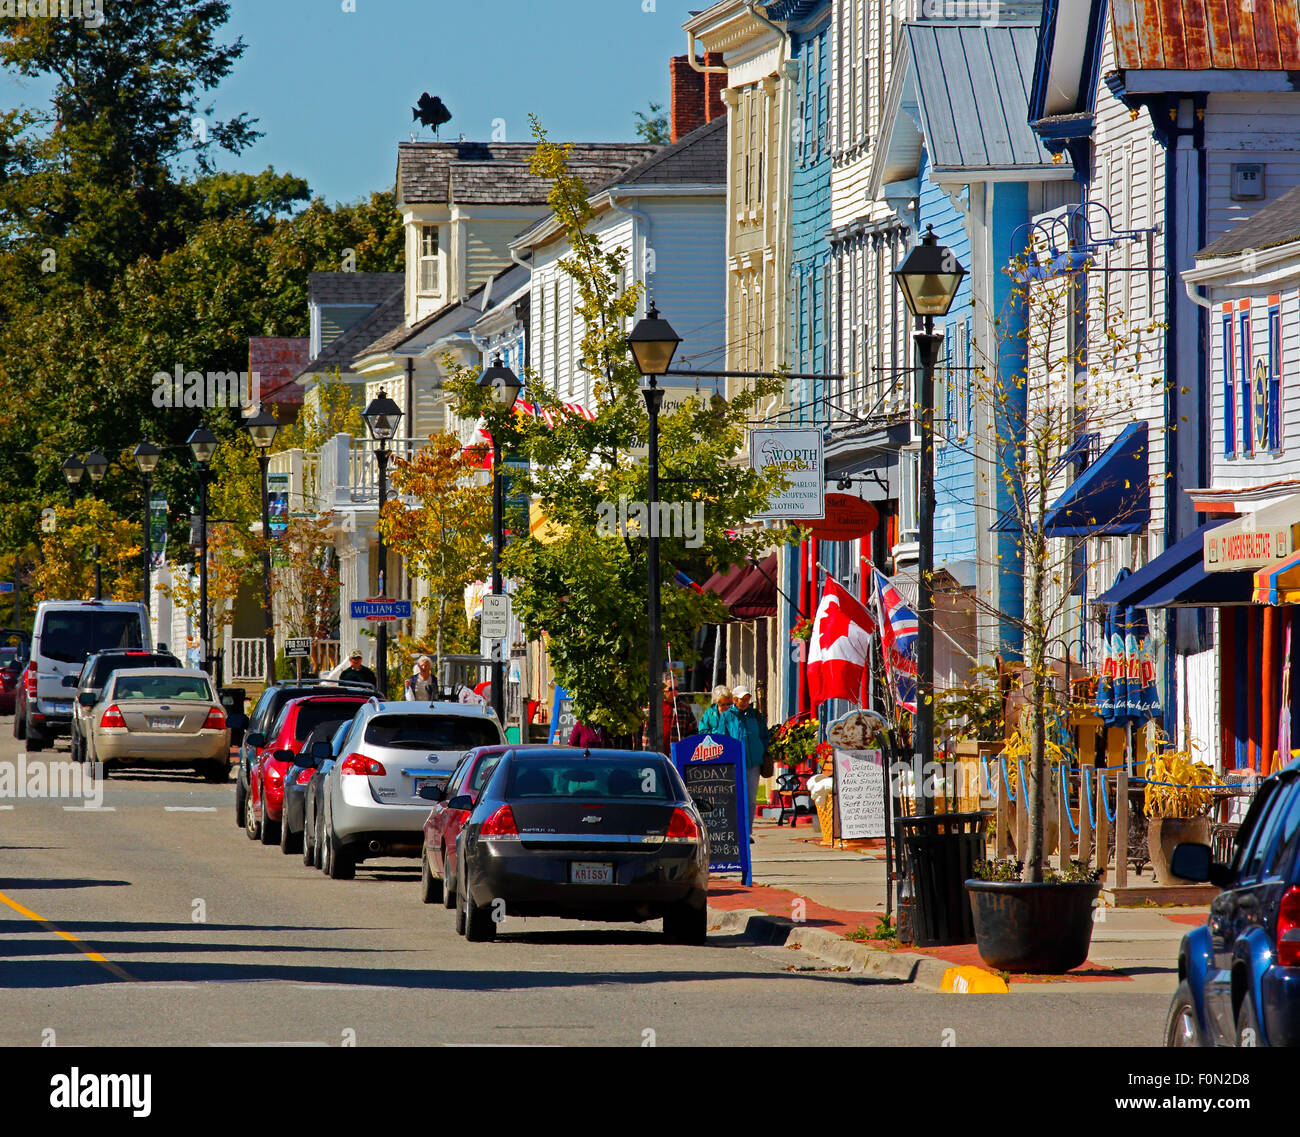 Die Geschäfte und Touristenziel von Water Street, St. Andrews, New Brunswick, Kanada. Stockfoto